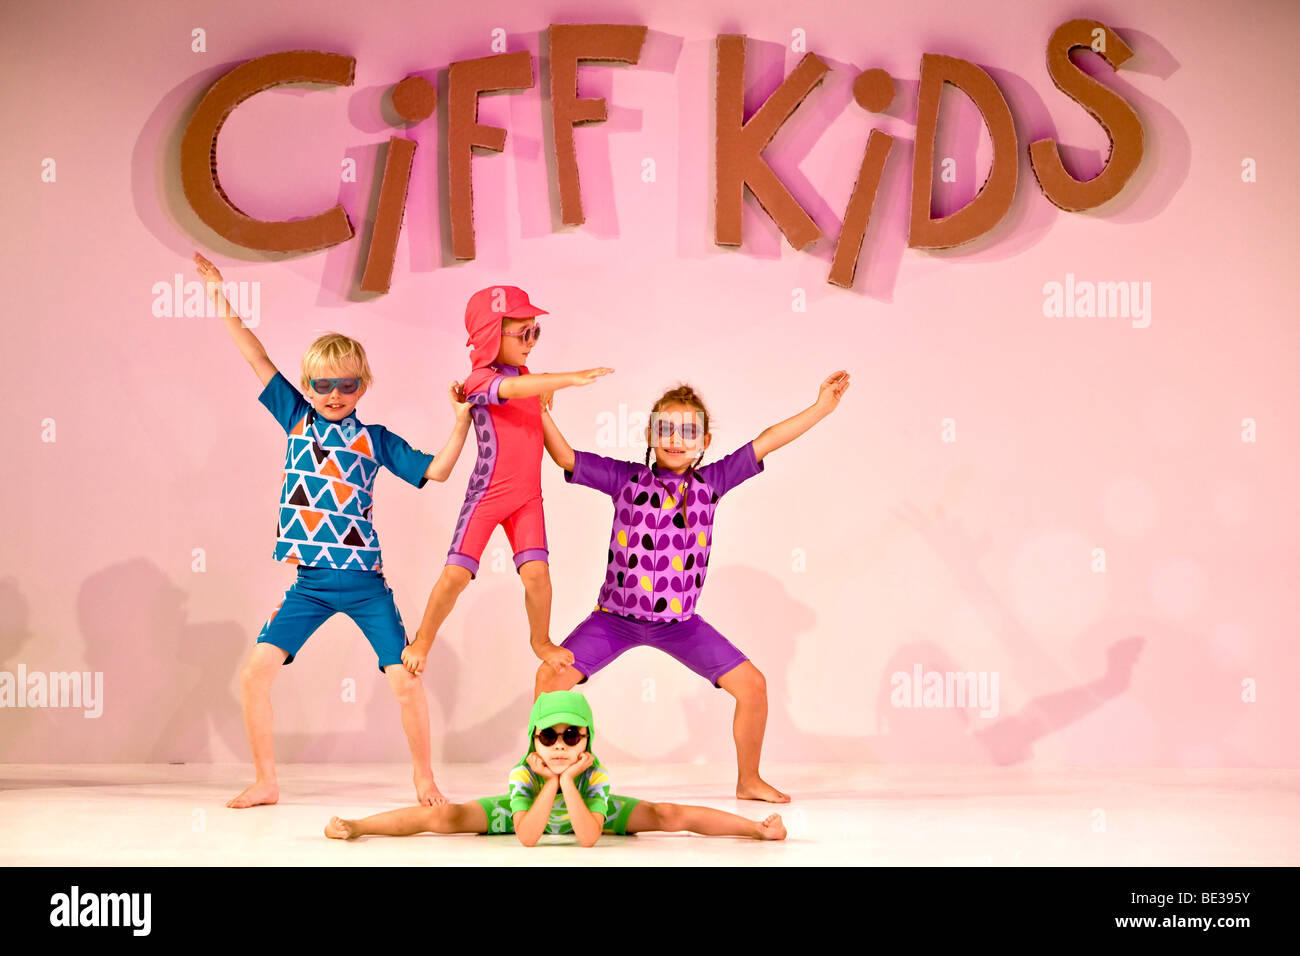 Children's fashion show, Ciff Kids Stock Photo